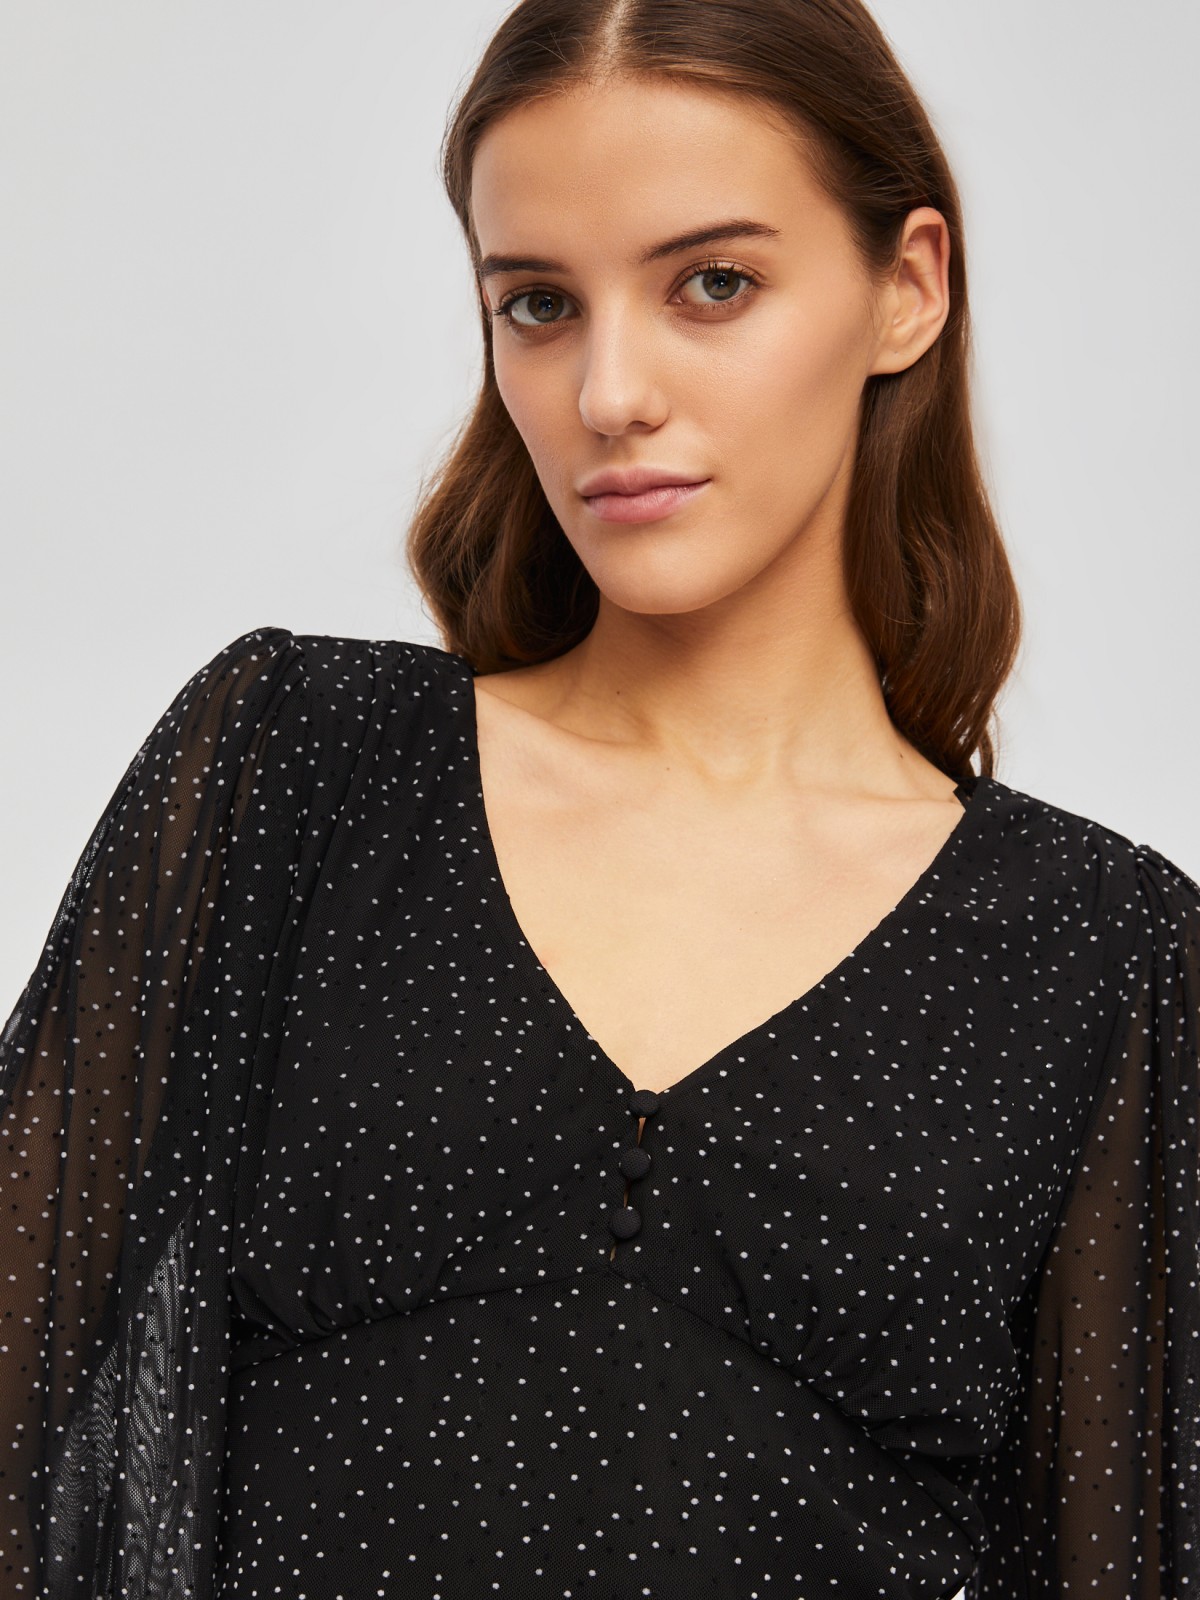 Укороченный топ-блузка с вырезом и принтом в горошек zolla 024111159261, цвет черный, размер XS - фото 4